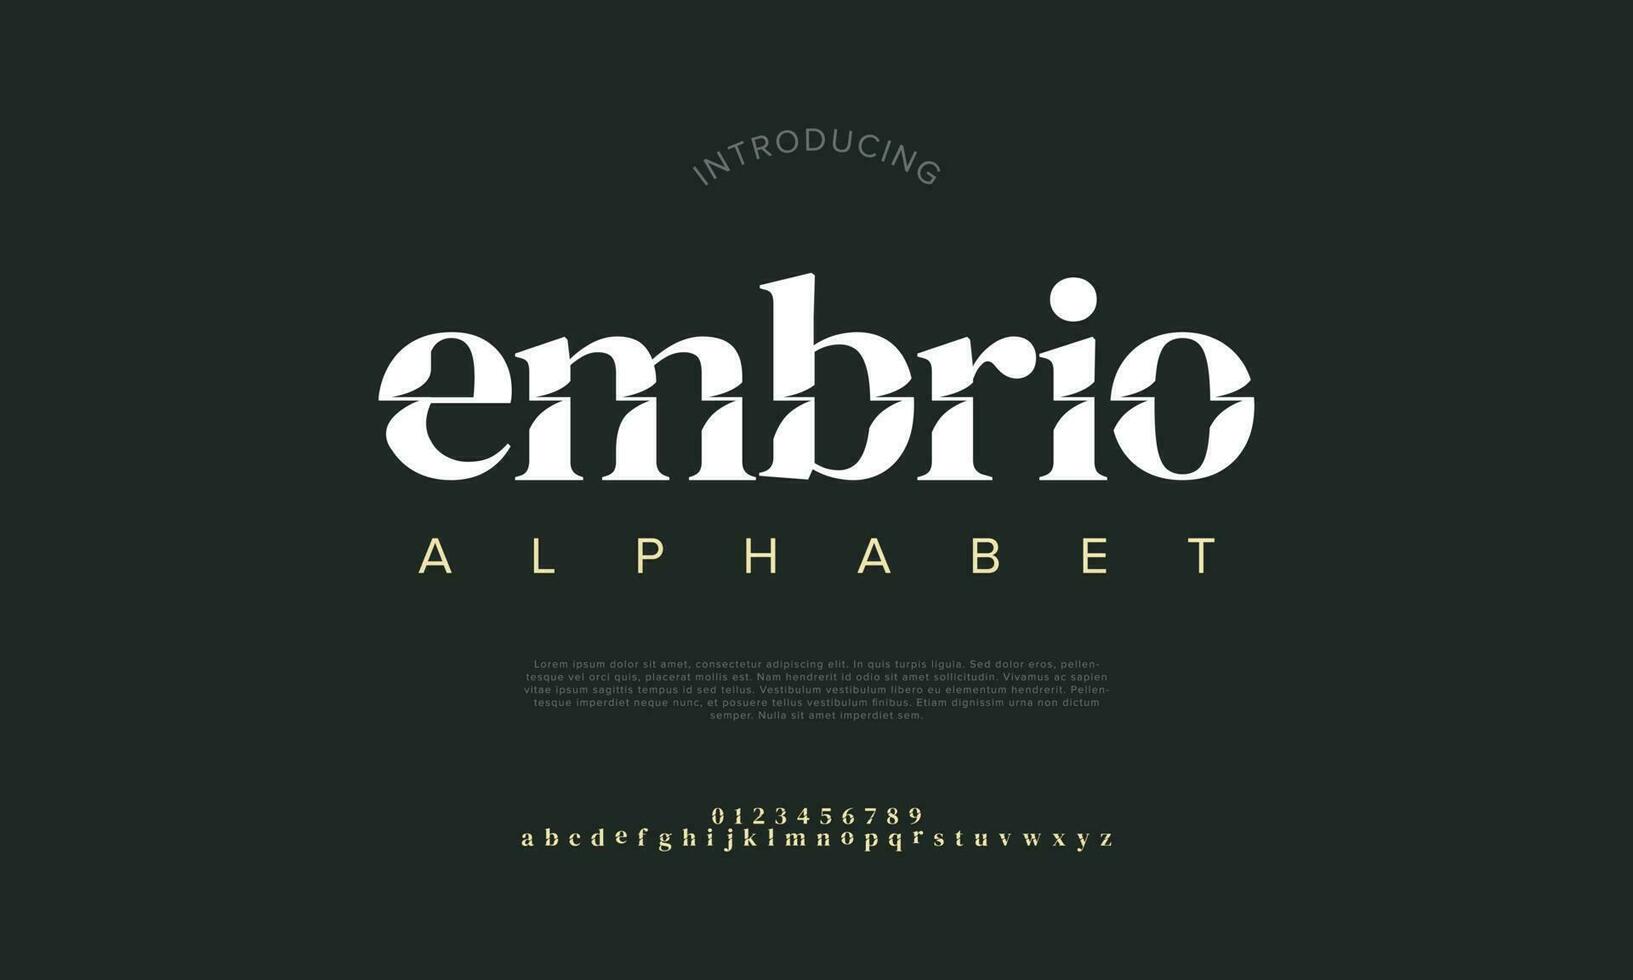 embrio abstract digitaal technologie logo doopvont alfabet. minimaal modern stedelijk fonts voor logo, merk enz. typografie lettertype hoofdletters kleine letters en nummer. vector illustratie